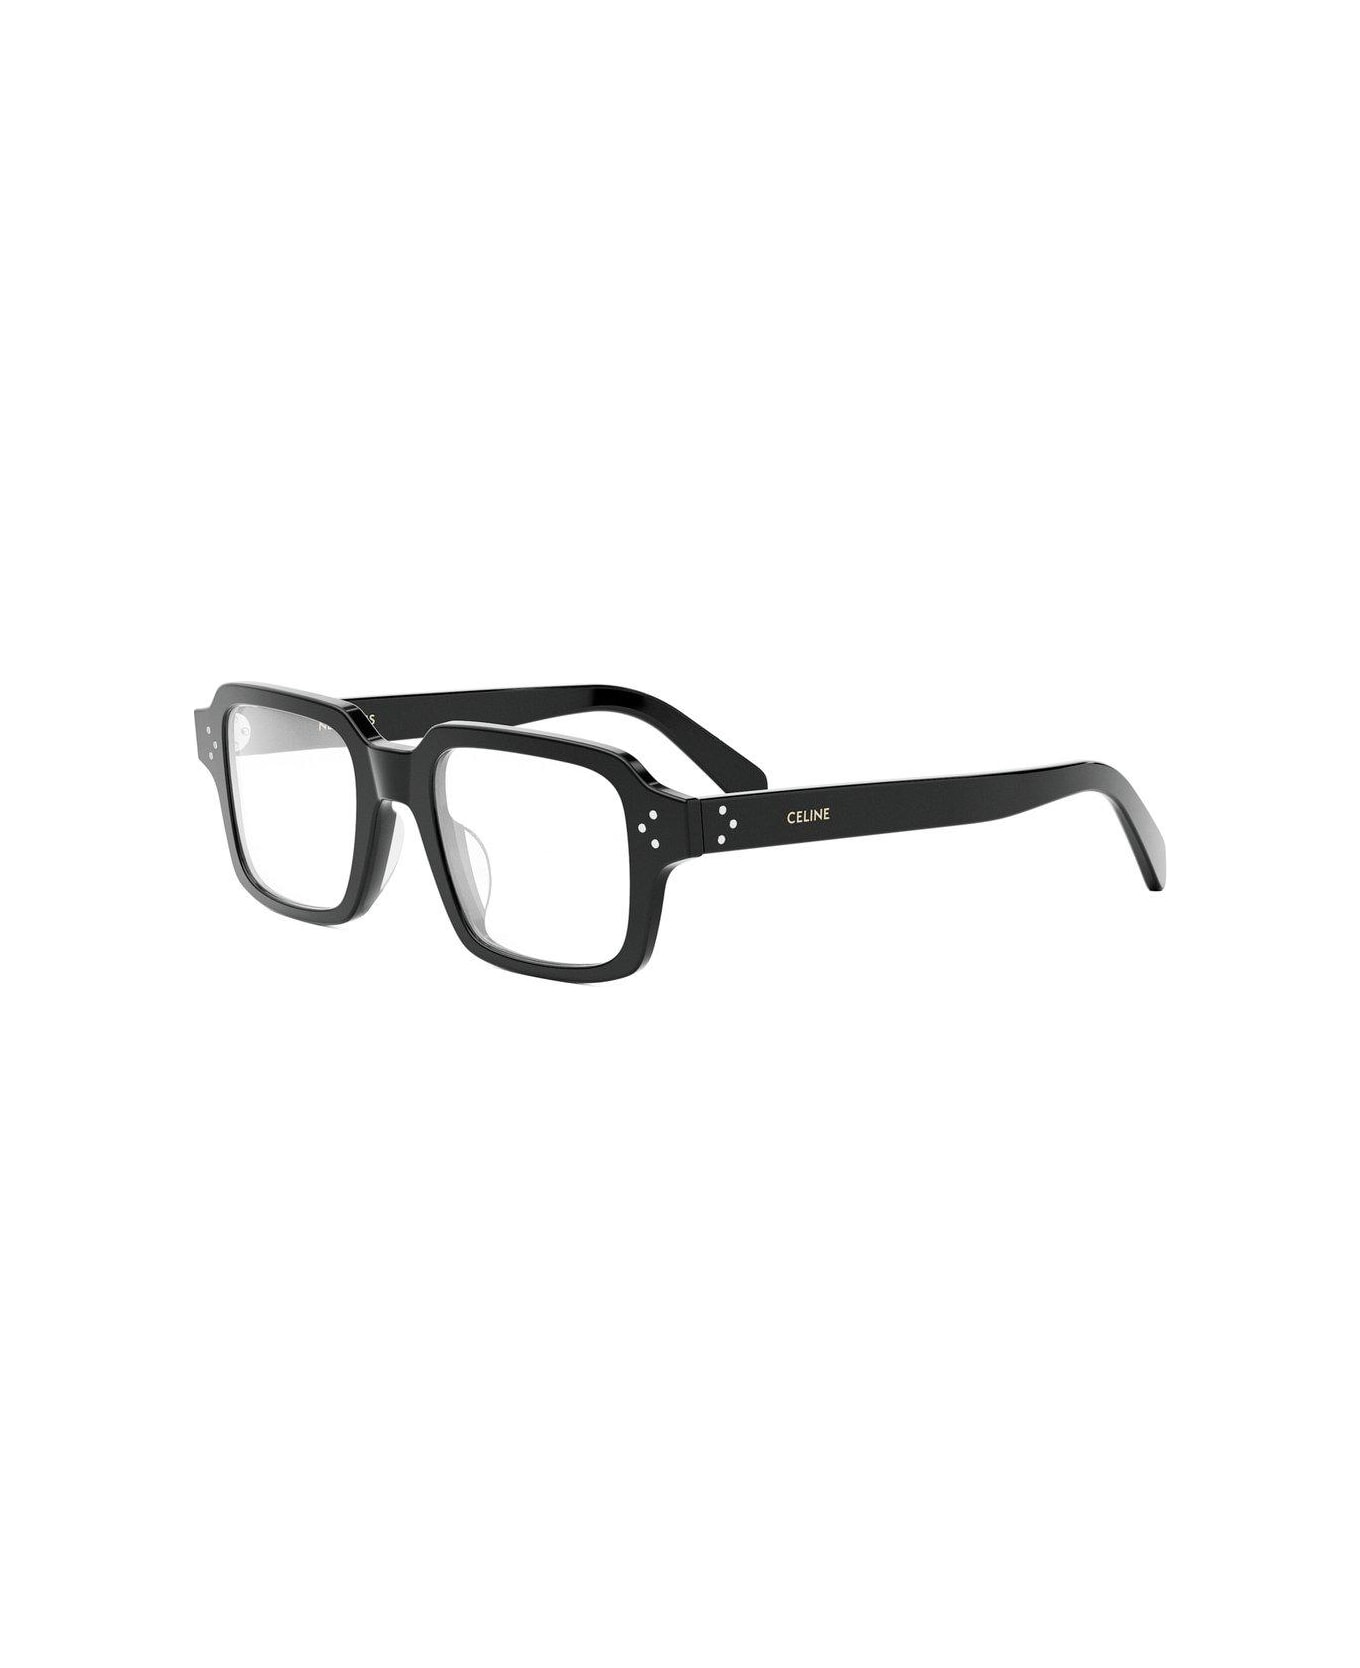 Celine Rectangular Frame Glasses - 001